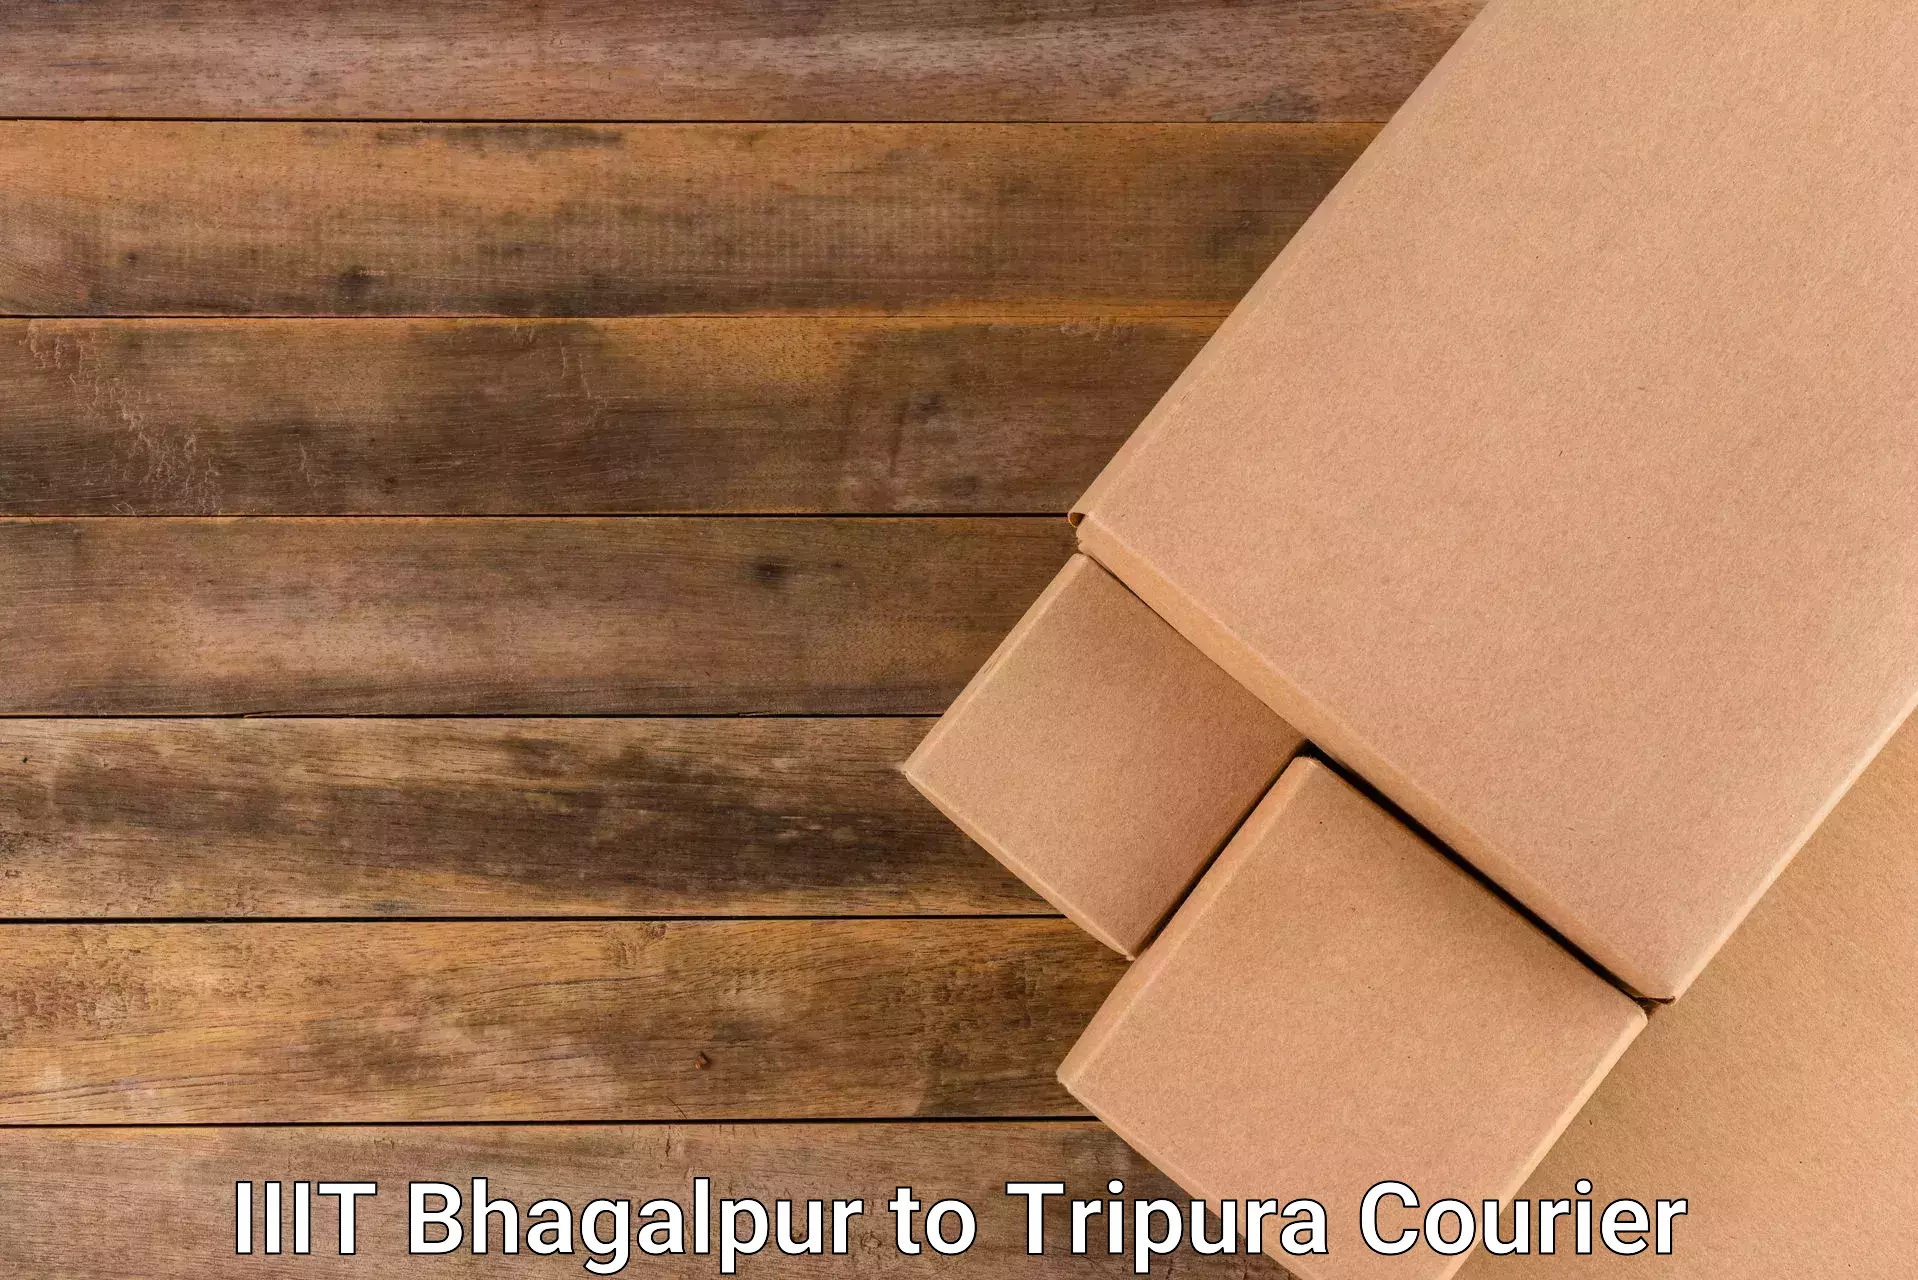 Courier services IIIT Bhagalpur to Aambasa